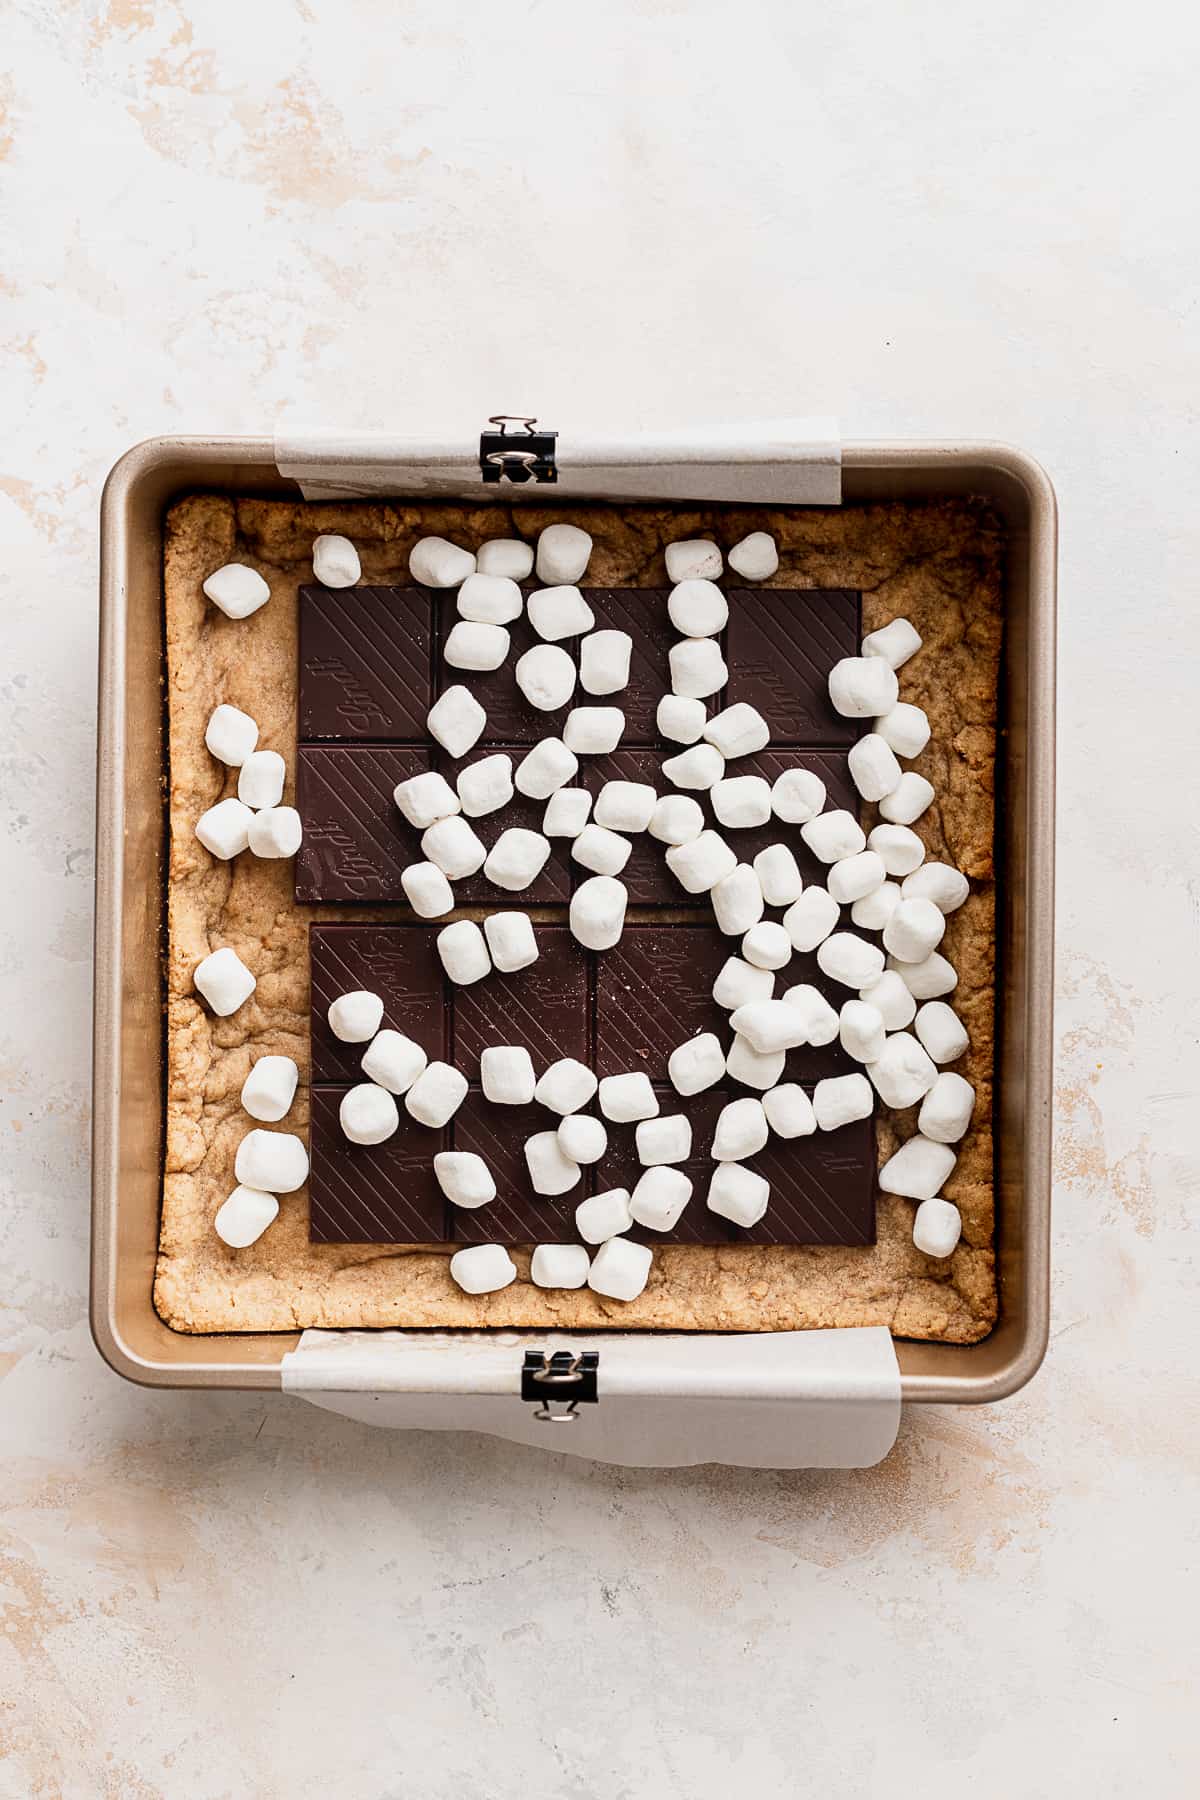 Mini marshmallows in the pan.